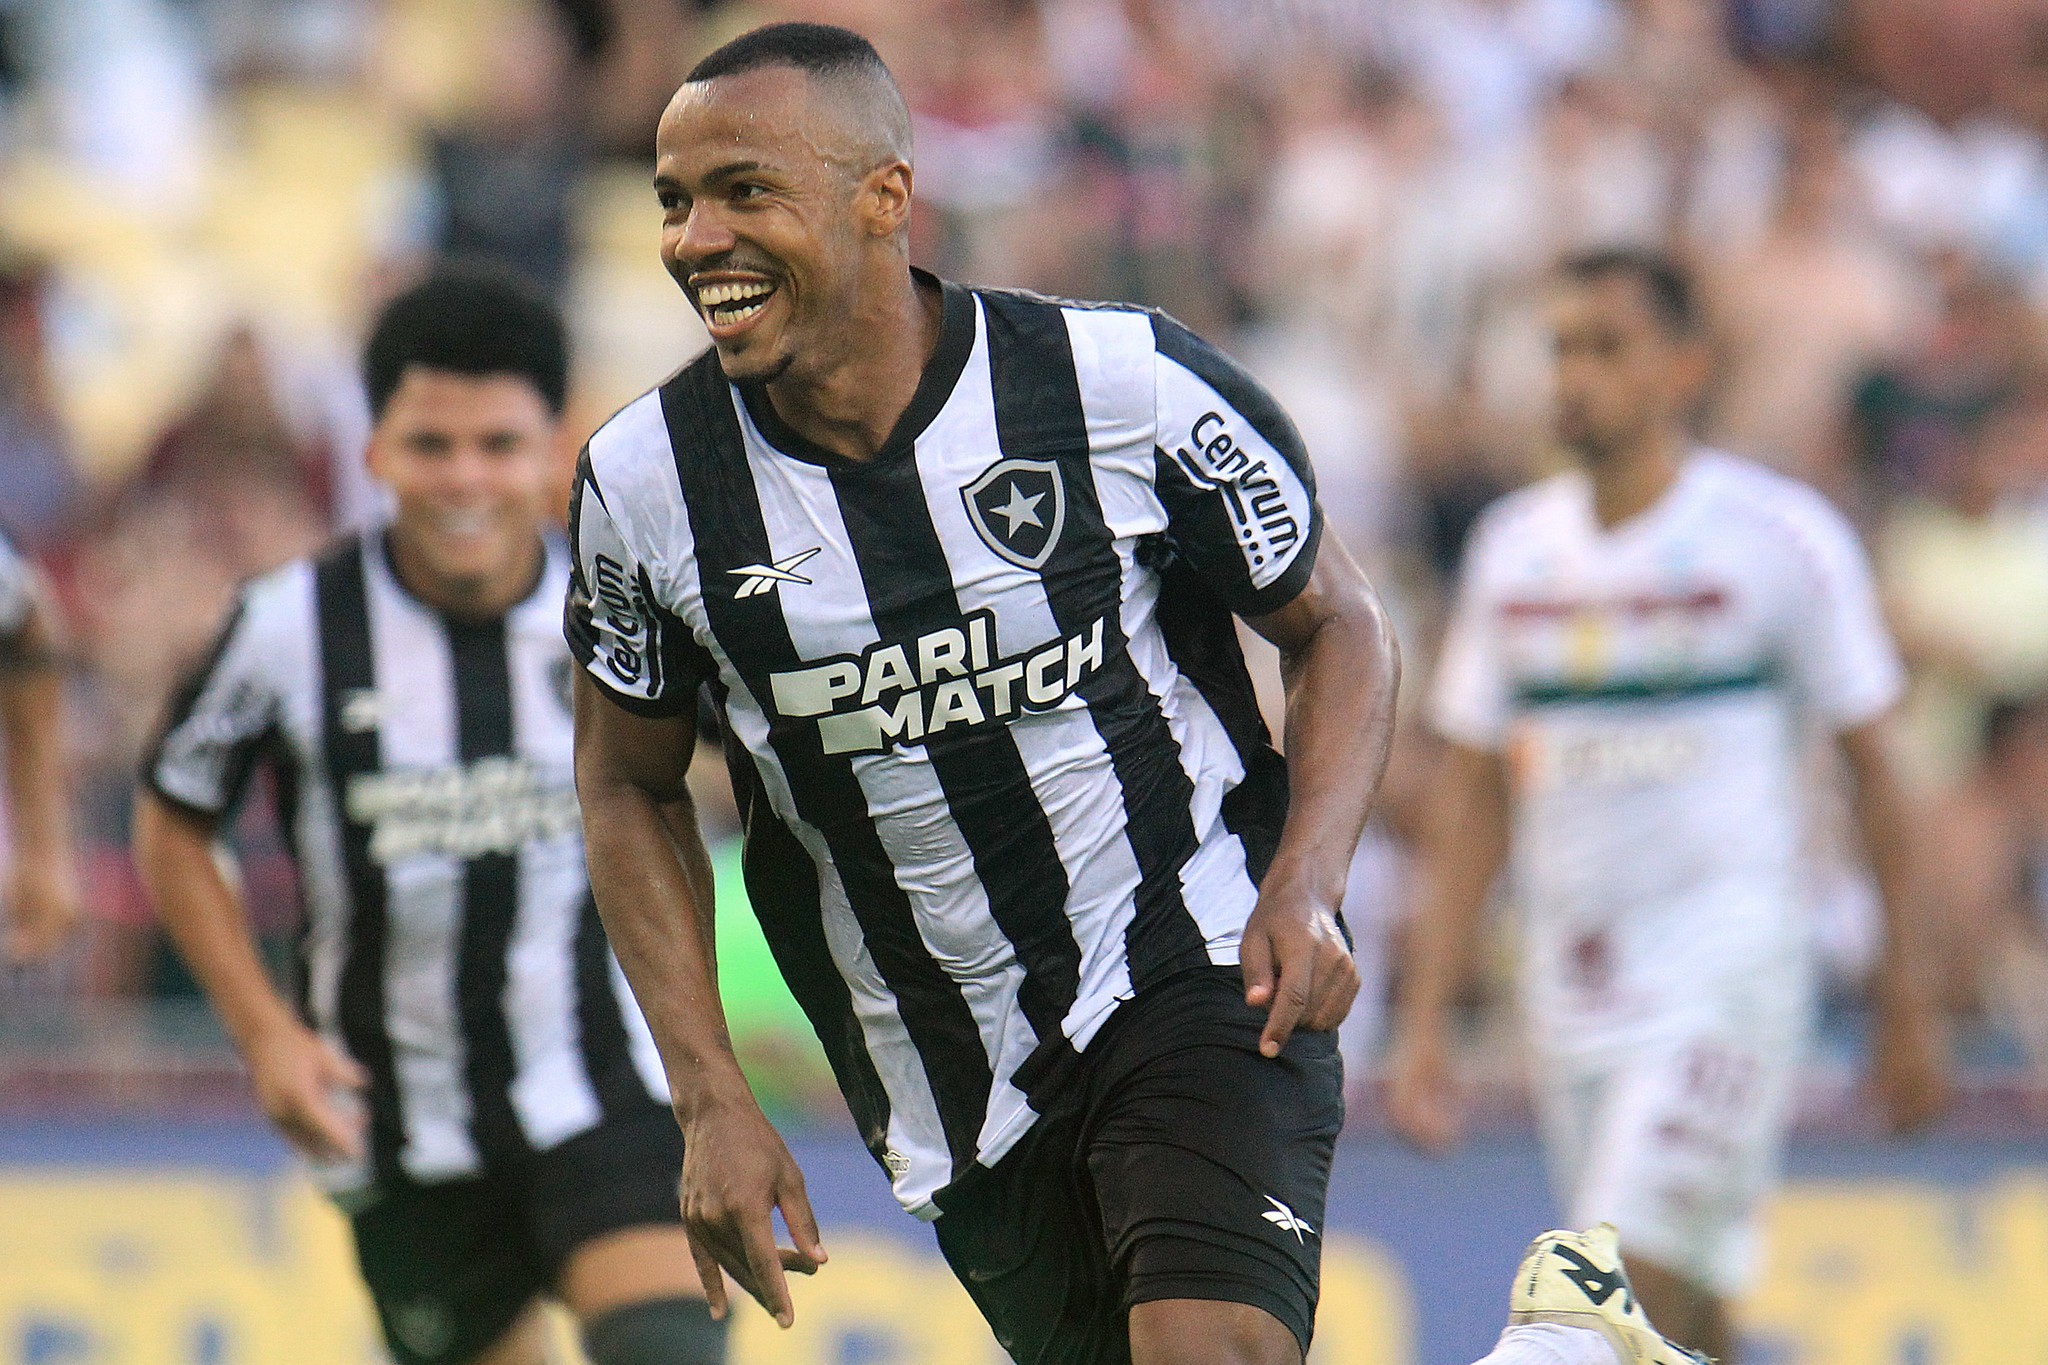 Com Vasco de olho, Marlon Freitas não se abala com críticas e reafirma importância no Botafogo